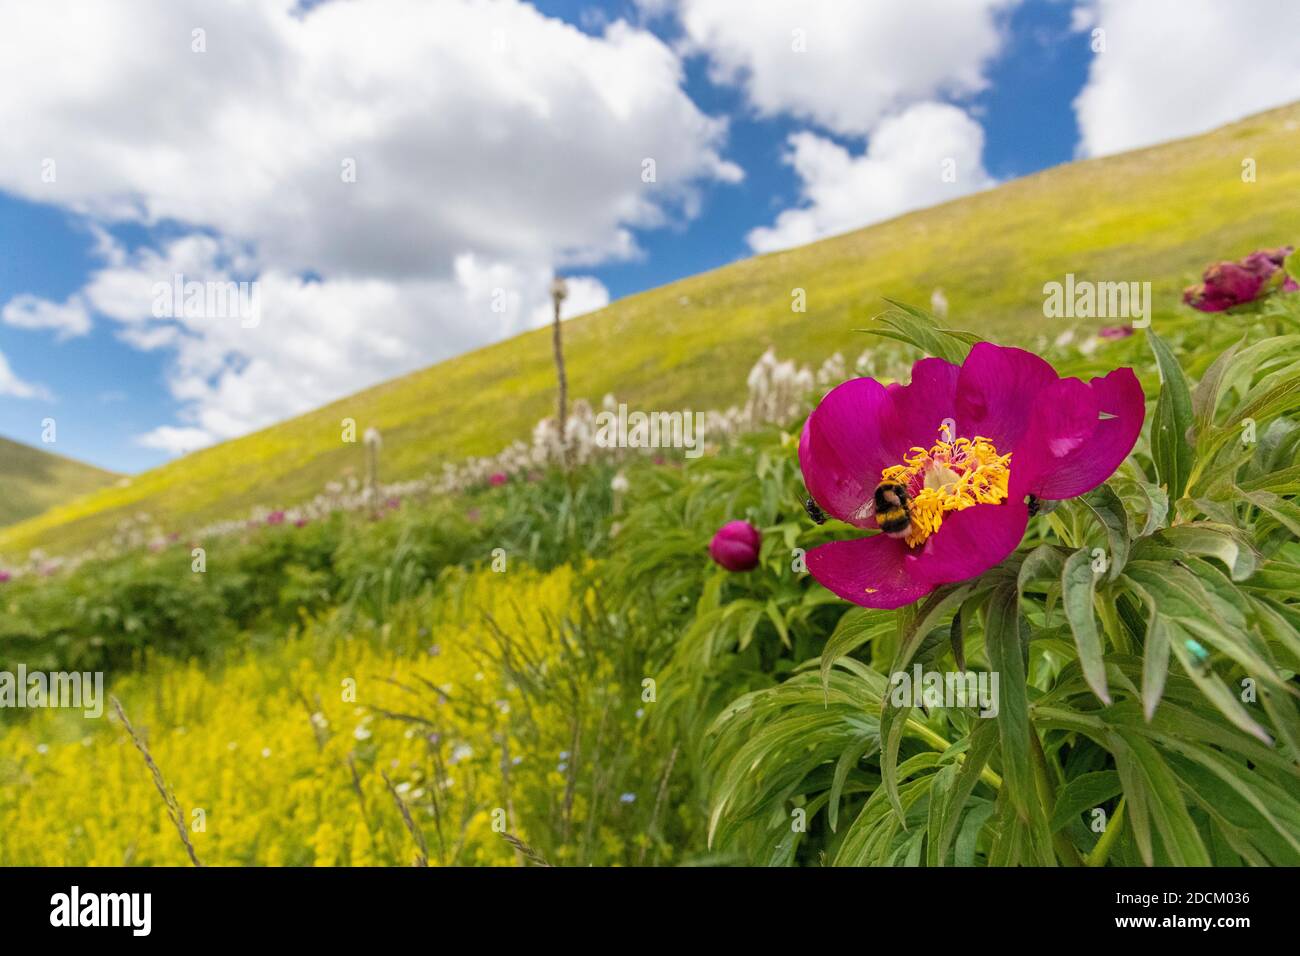 Comune Peonia (Paeonia officinalis), fiore in primo piano con un pendio di montagna e le nuvole sullo sfondo, Abruzzo, Italia Foto Stock